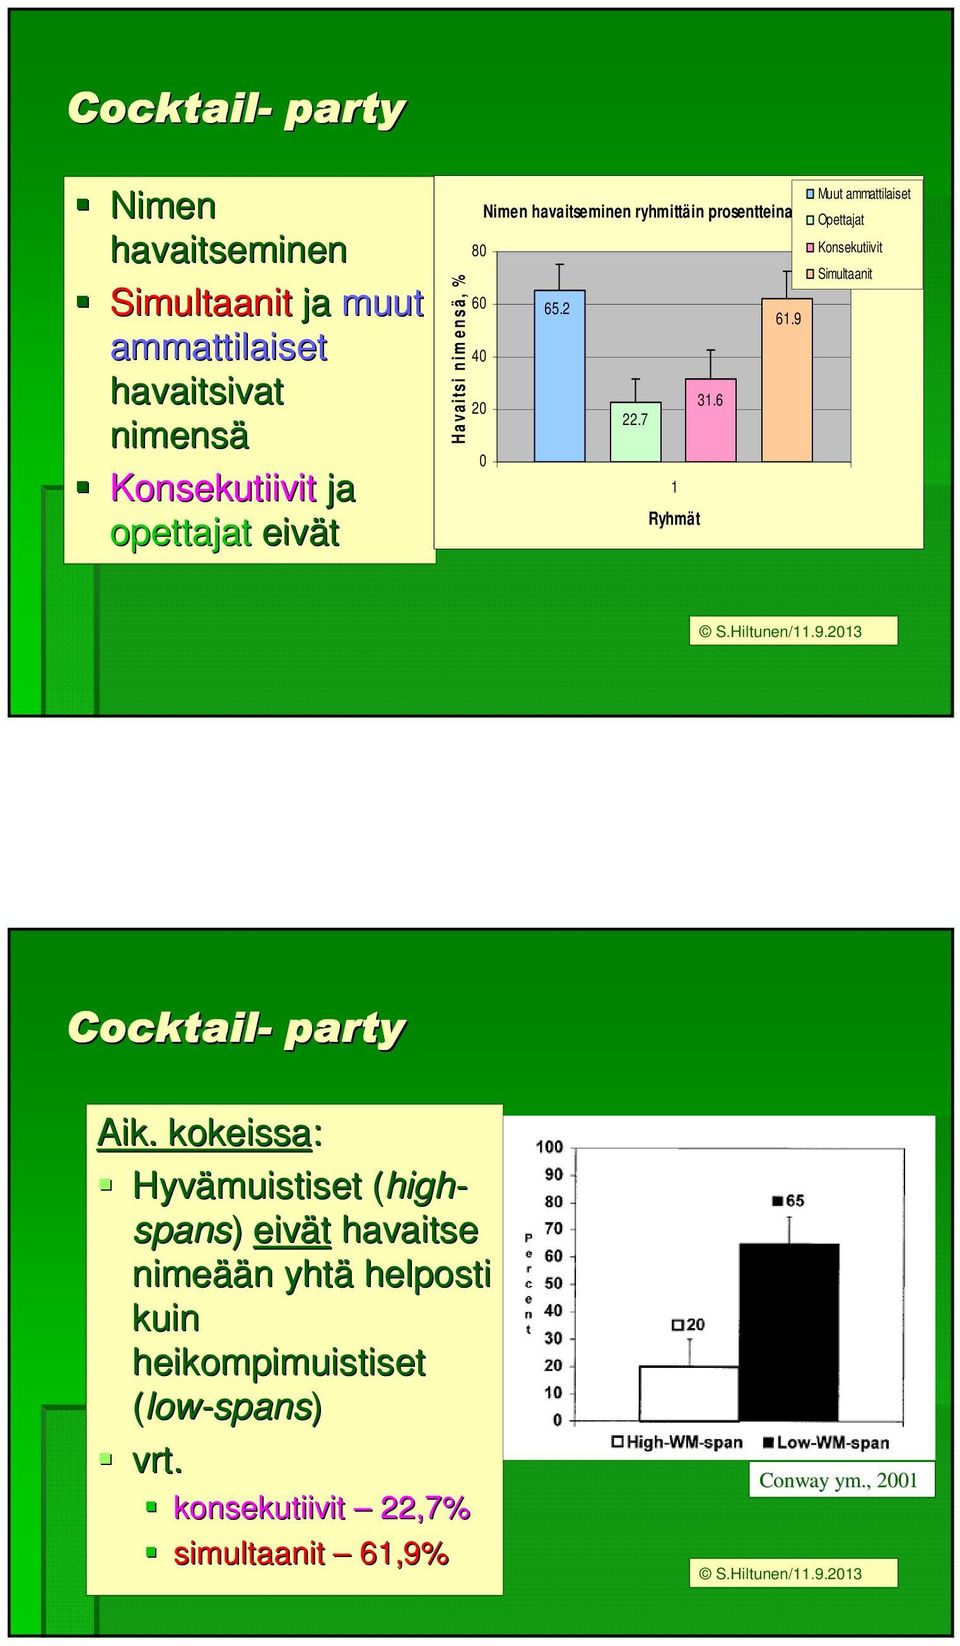 7 0 1 Ryhmät Muut ammattilaiset Opettajat Konsekutiivit Simultaanit S.Hiltunen/11.9.2013 Cocktail- party Aik.